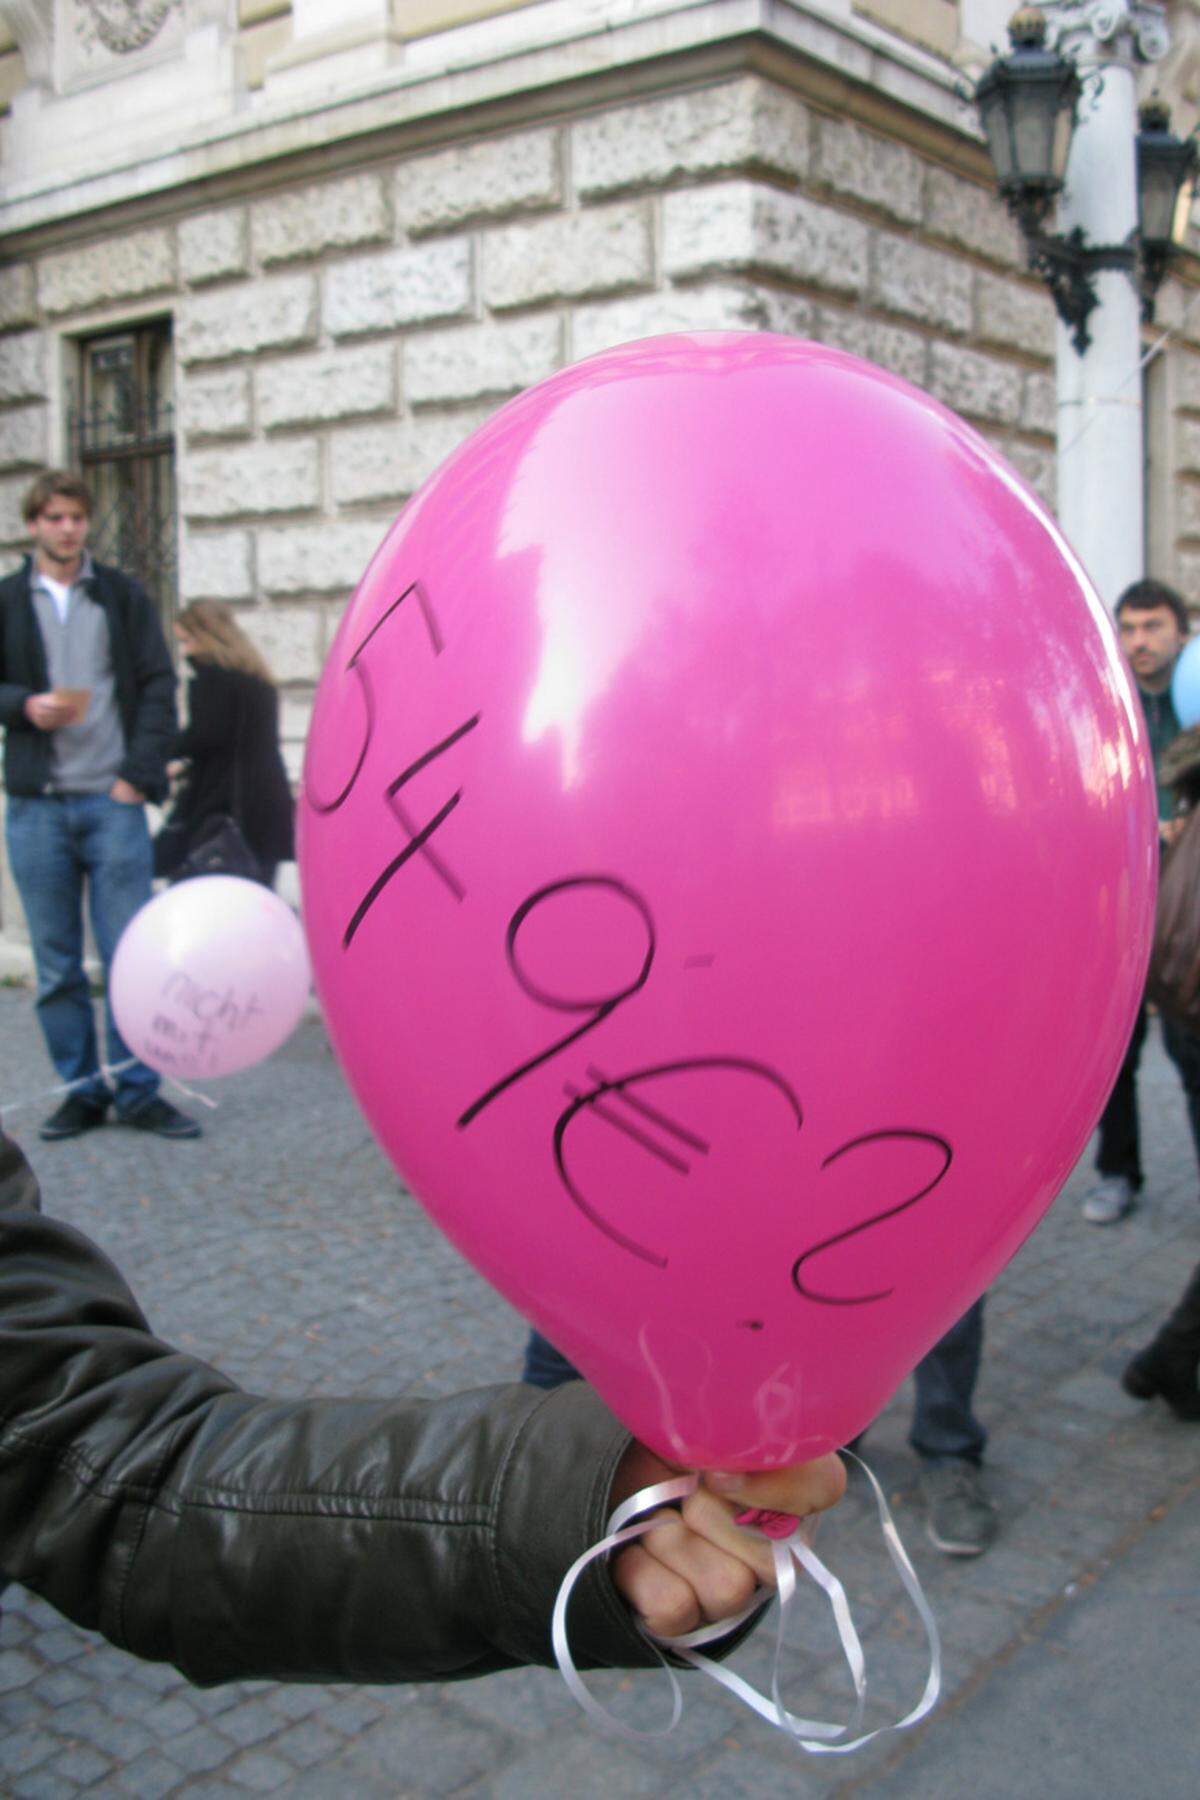 Auf den bunten Luftballons waren unterschiedlichste Beträge zu lesen. Eine Anspielung darauf, dass die Unis möglicherweise bald autonom über die Höhe und Einhebung der Studiengebühren entscheiden können, sollte es innerhalb der Koalition bis Ende Februar keine Einigung geben.